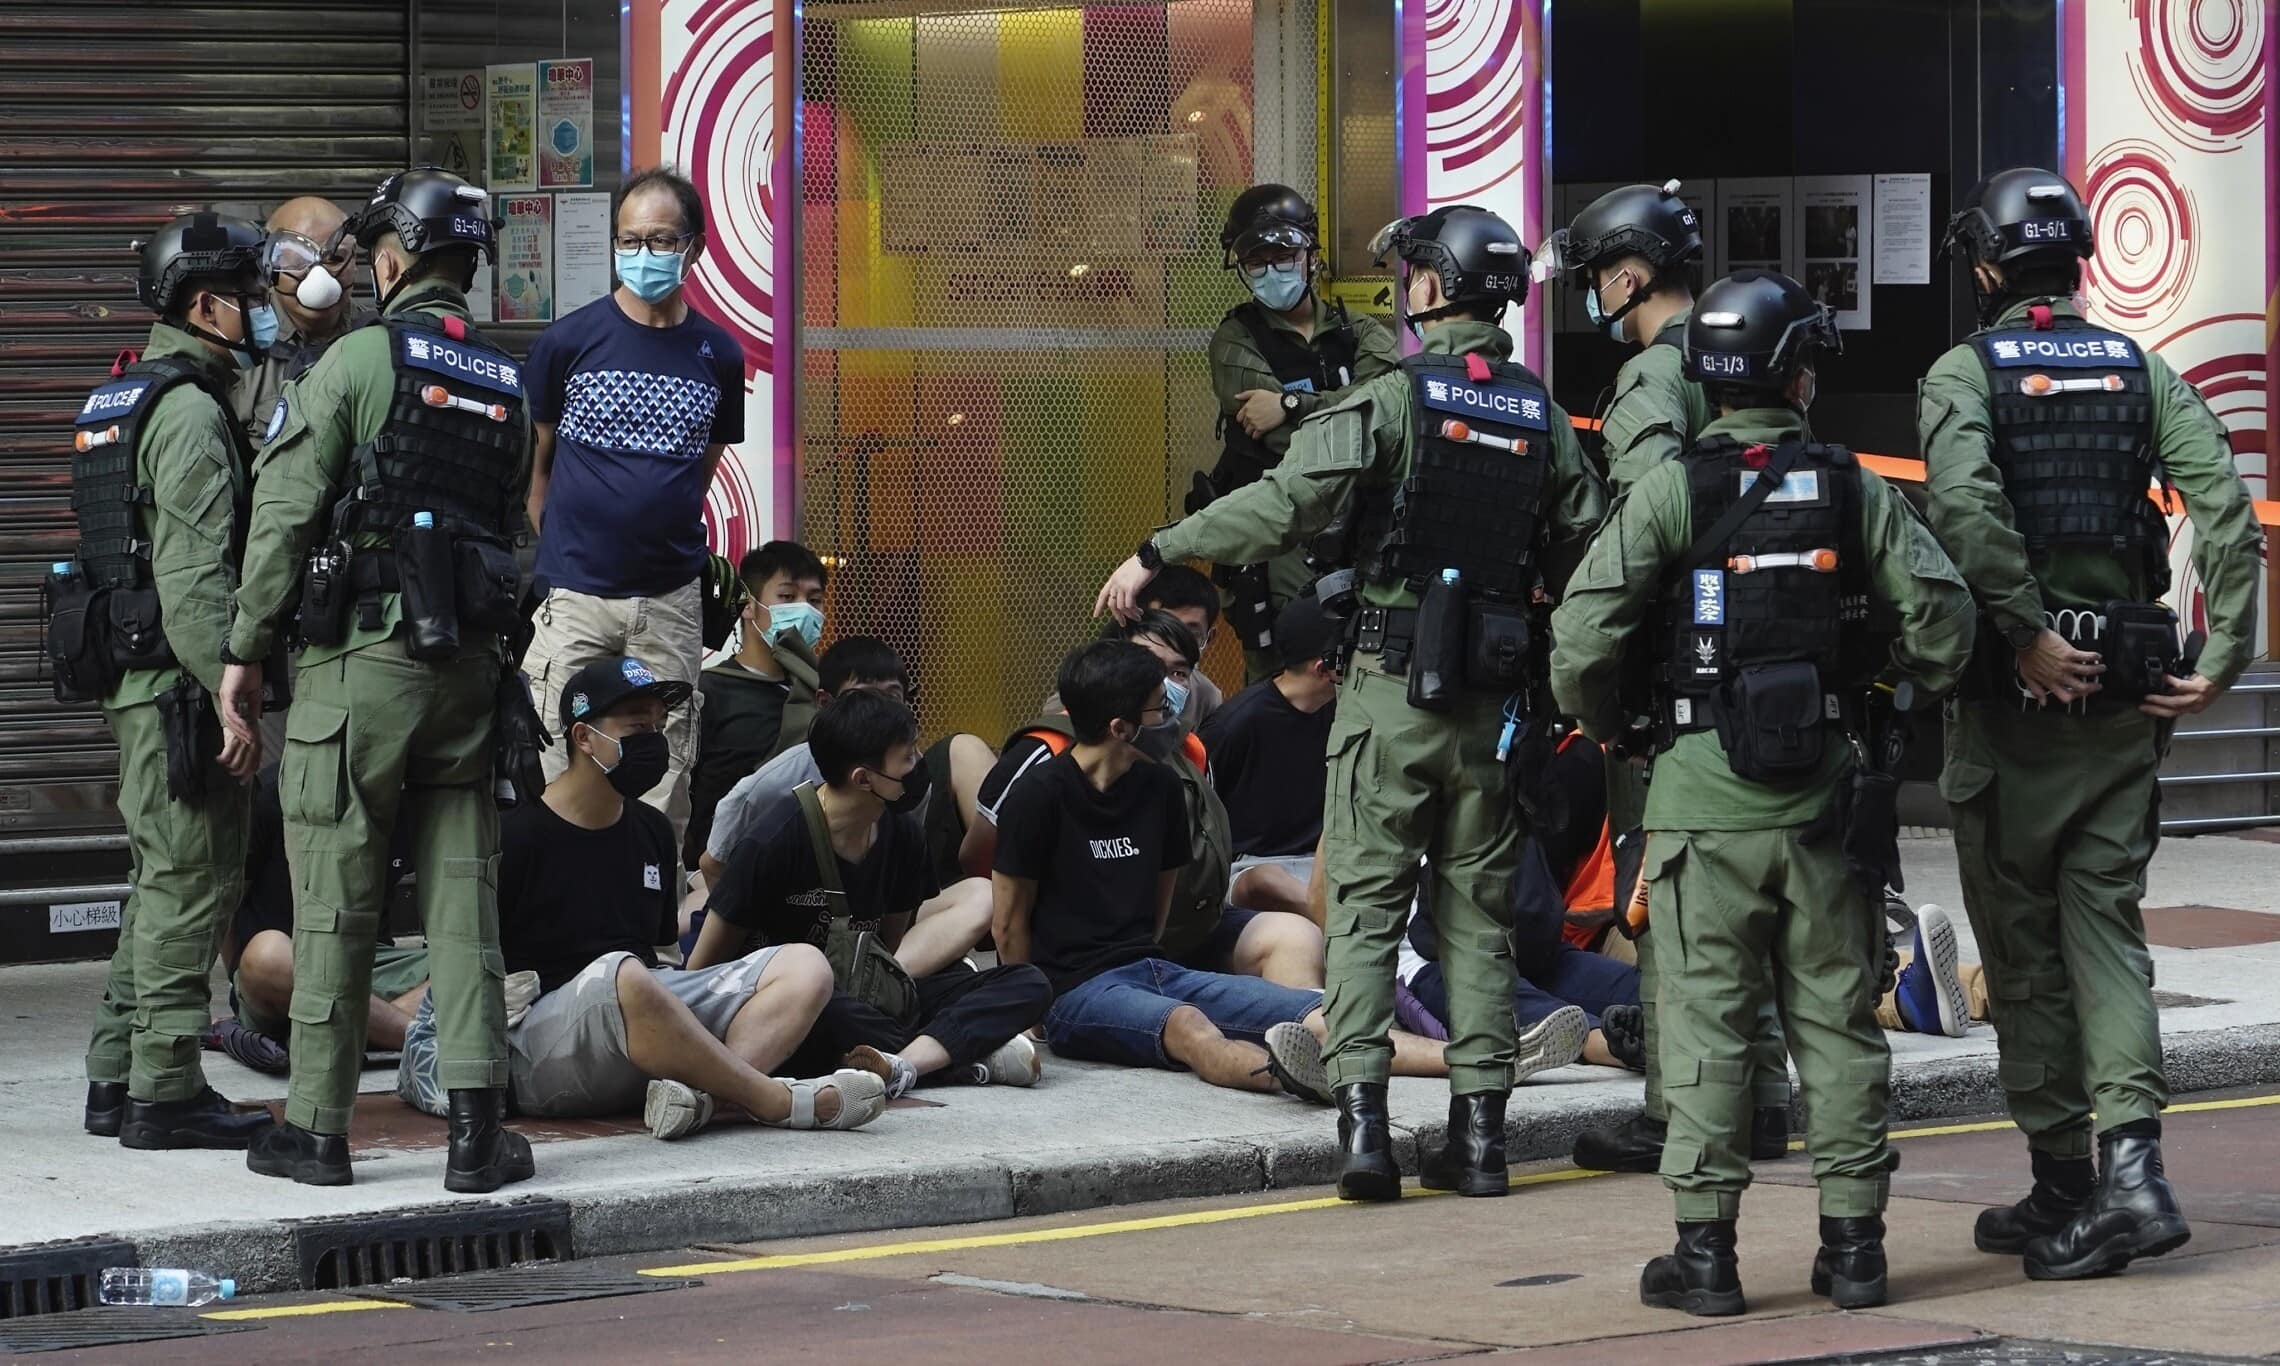 מפגינים נעצרים על ידי שוטרים בהונג קונג, 6 בספטמבר 2020 (צילום: Vincent Yu, AP)